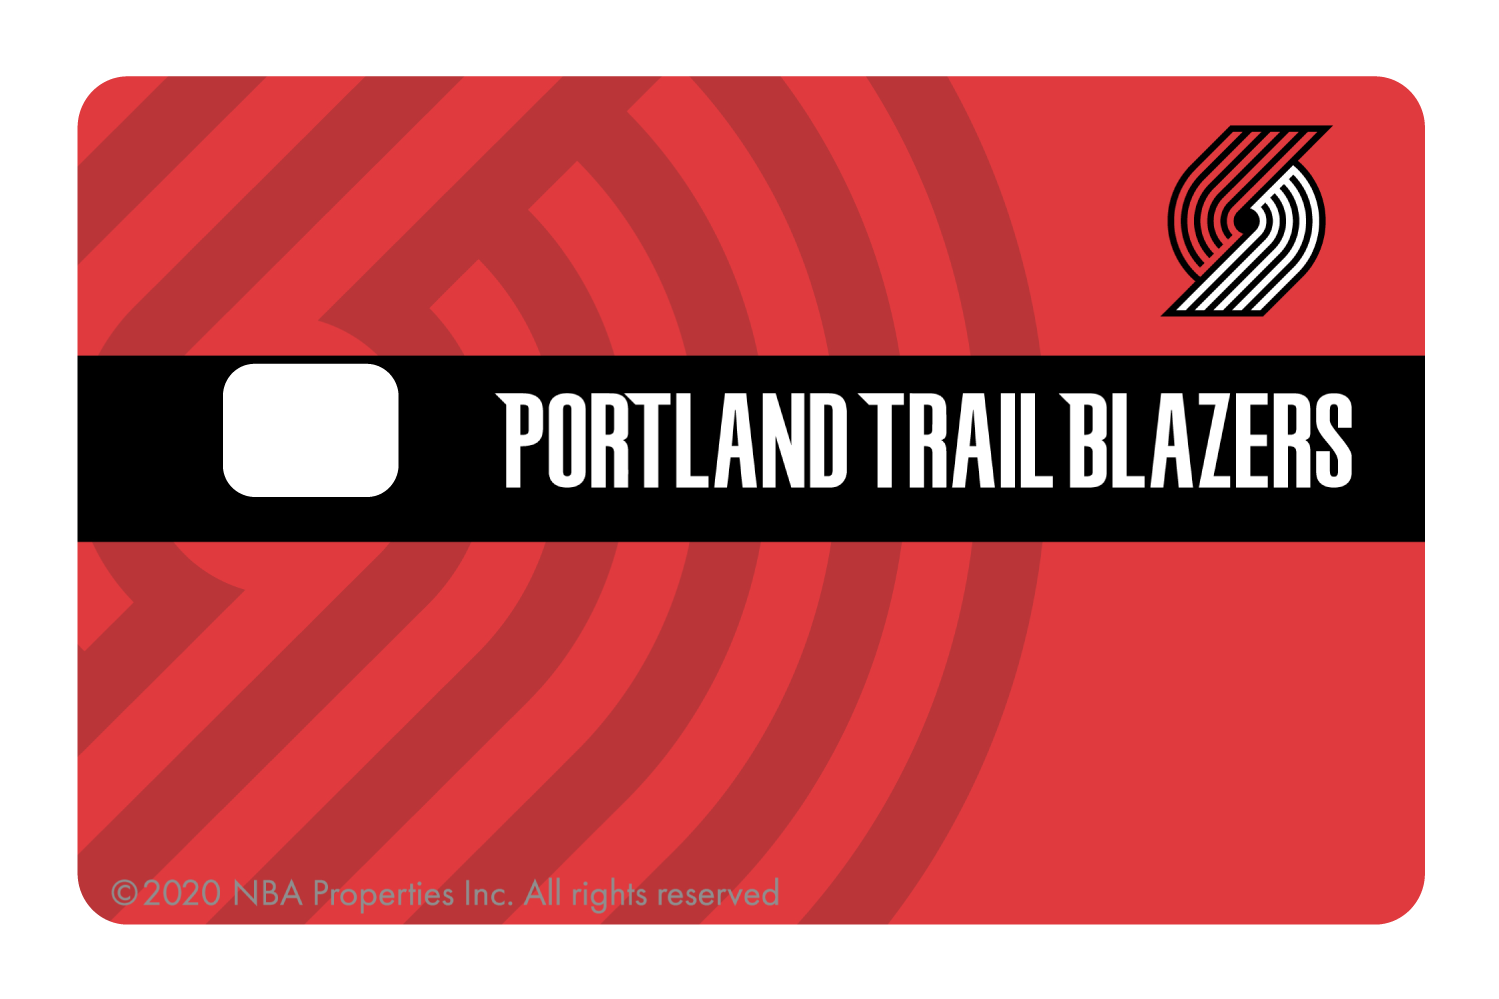 Portland Trail Blazers: Midcourt